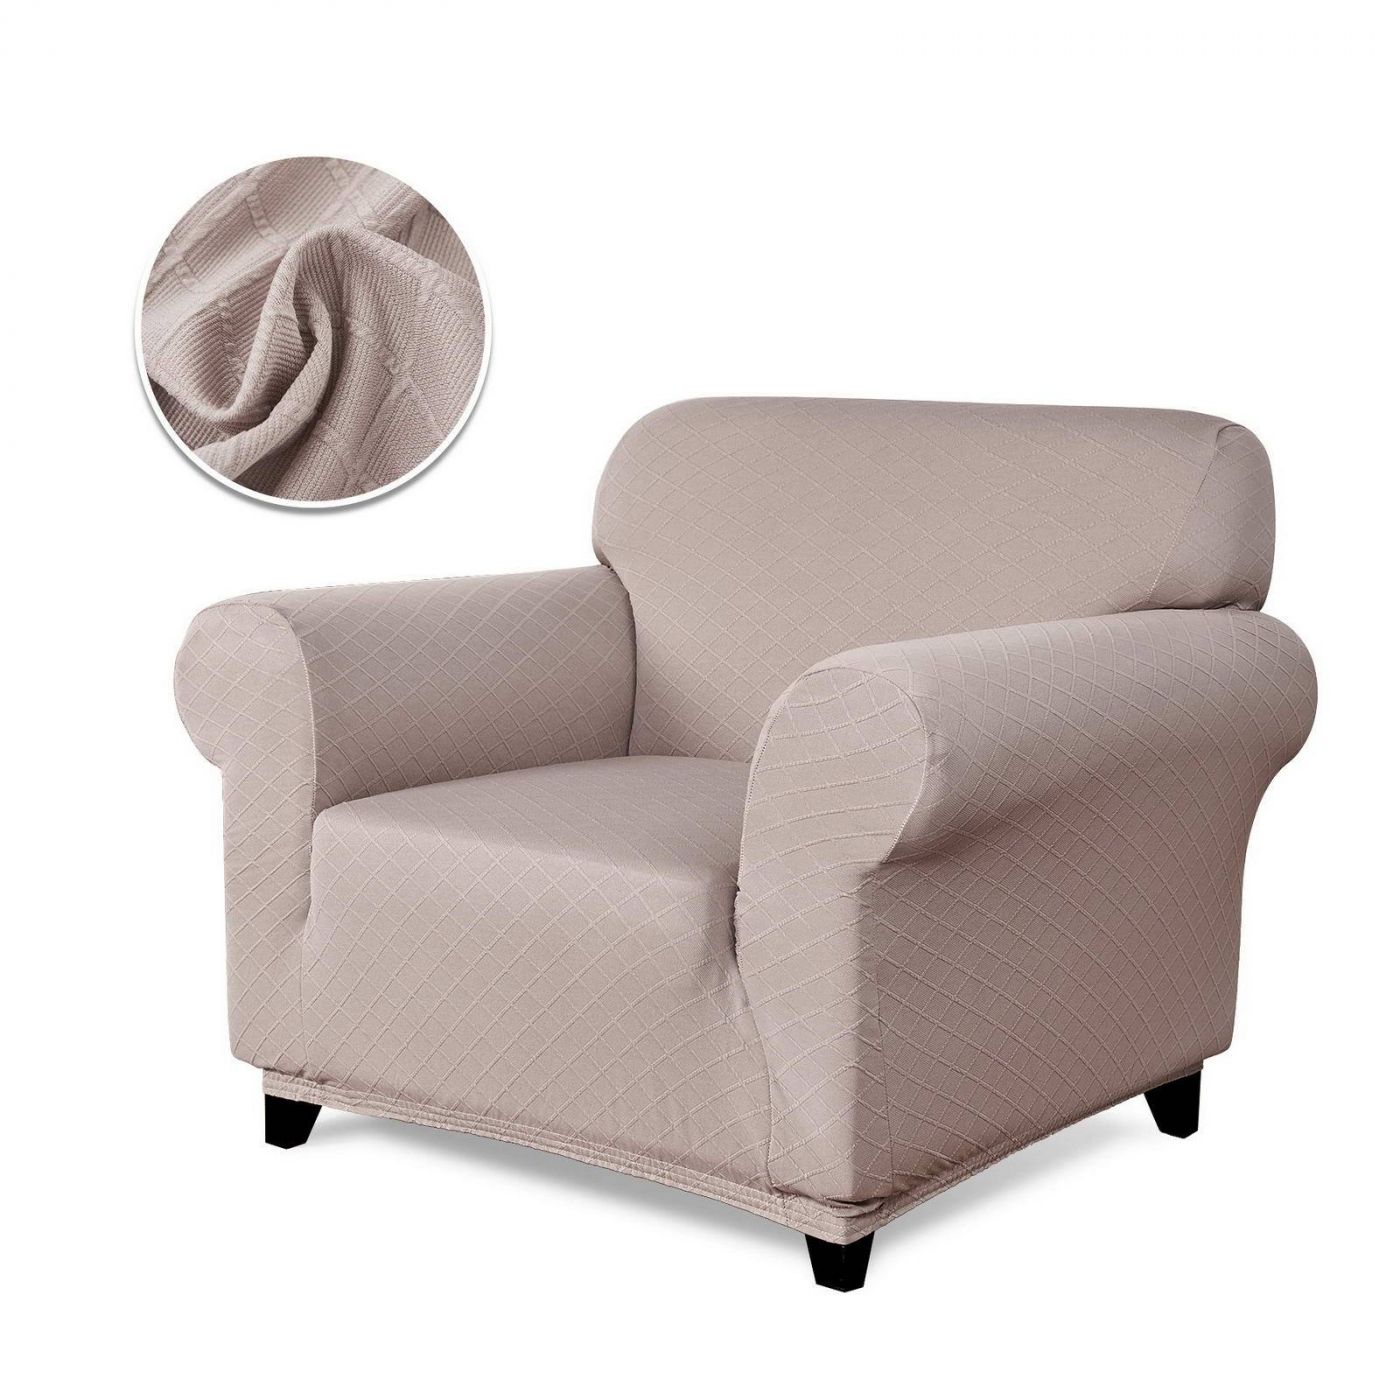 Чехол для кресла Илиана цвет: бежевый (Одноместный), размер Без наволочек sofi881468 Чехол для кресла Илиана цвет: бежевый (Одноместный) - фото 1